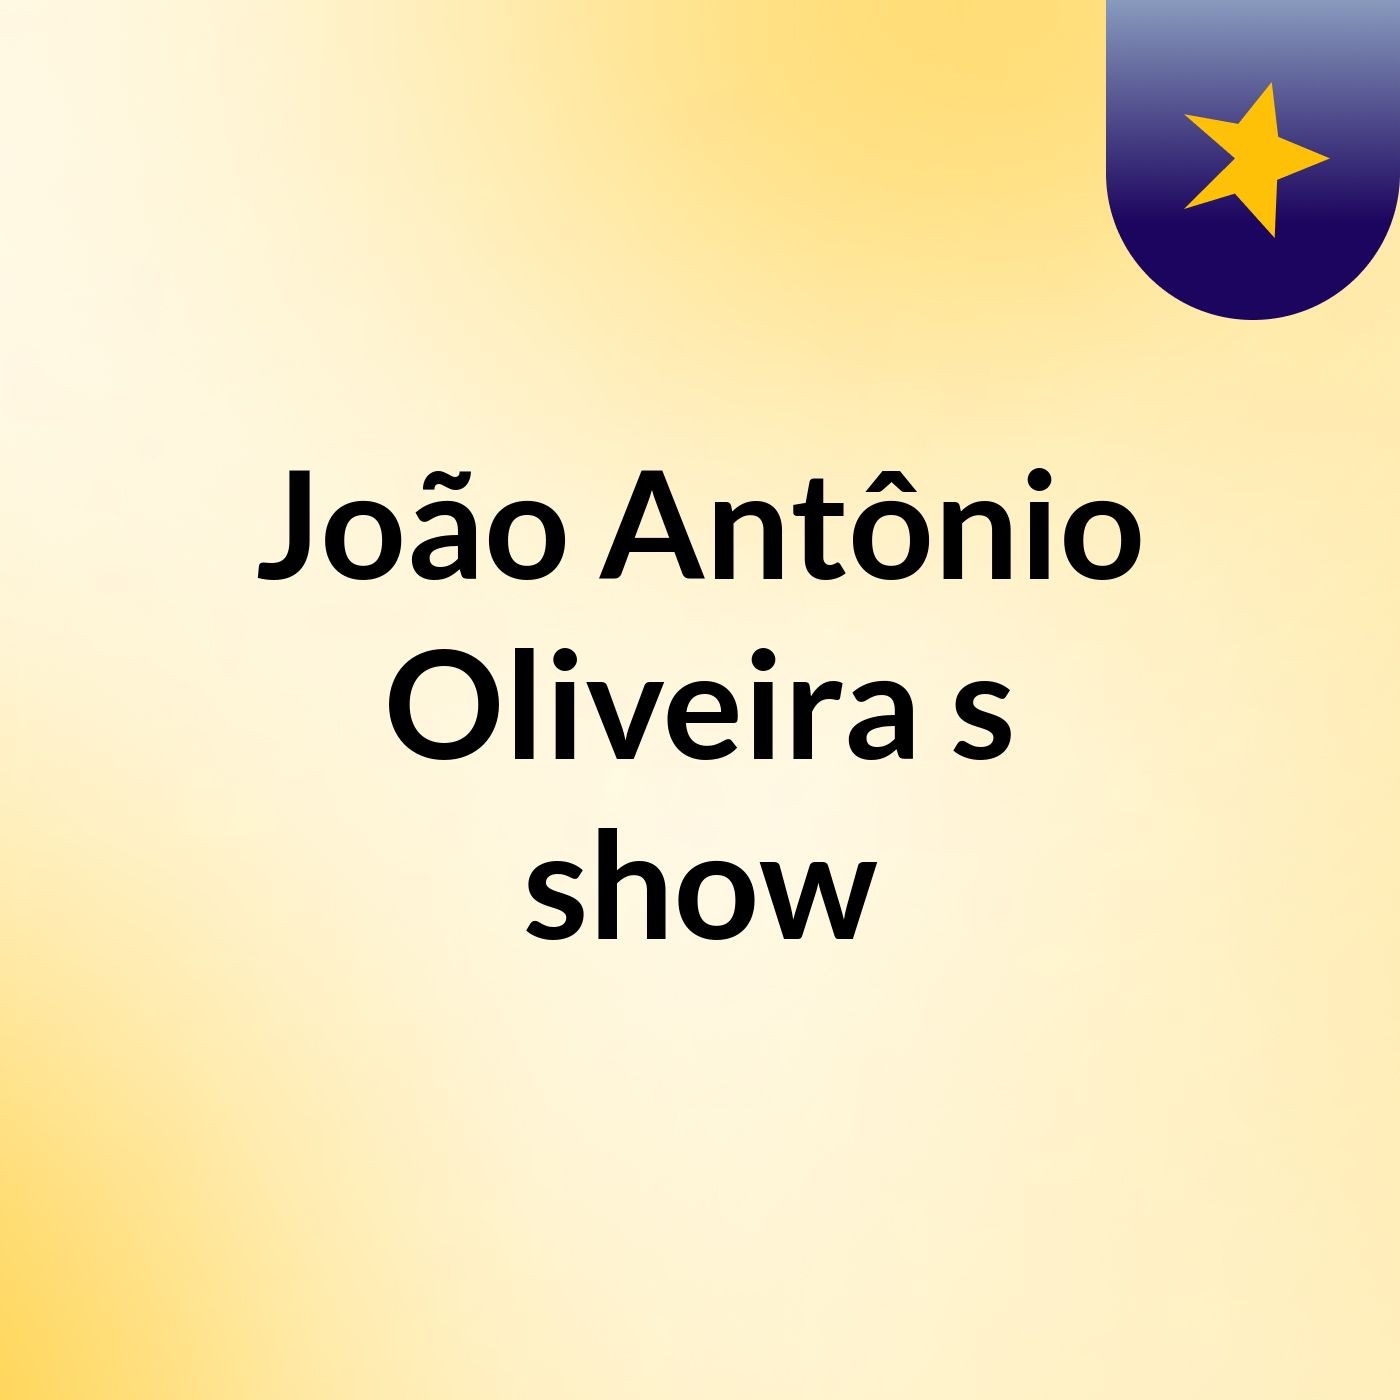 João Antônio Oliveira's show